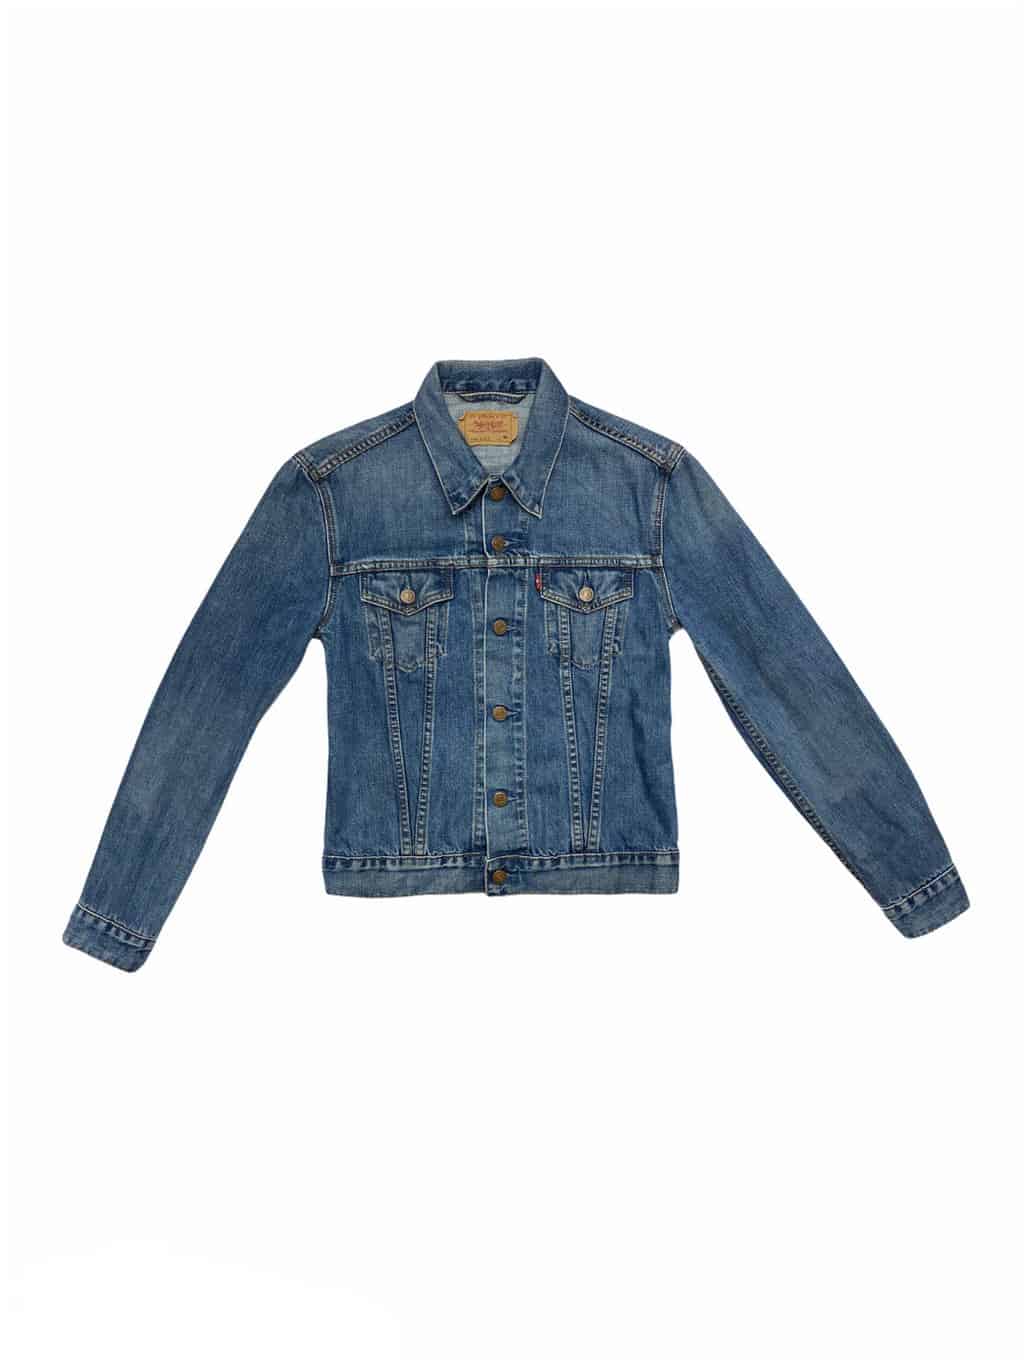 Vintage Levis Denim Jacket For Girls in Lovely Dark Blue 00s - M - St Cyr  Vintage